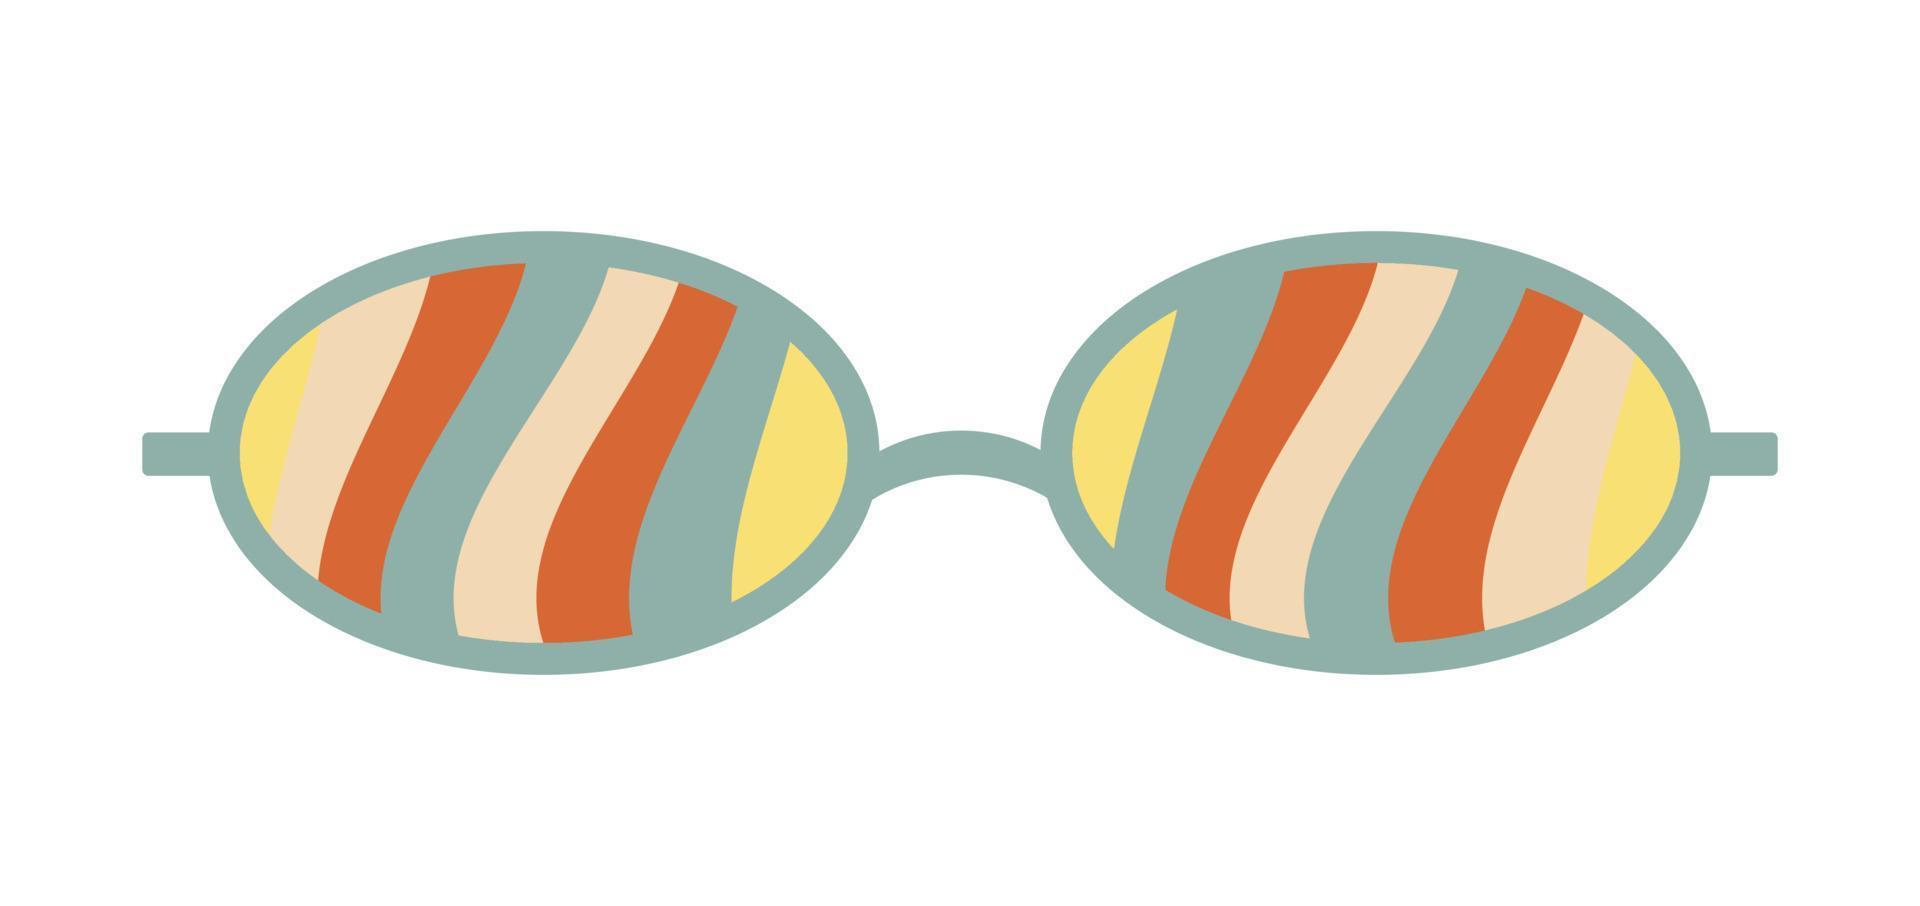 óculos de sol psicodélicos no estilo dos anos 70. elementos gráficos retrô groovy de óculos com arco-íris, linhas e ondas. vetor